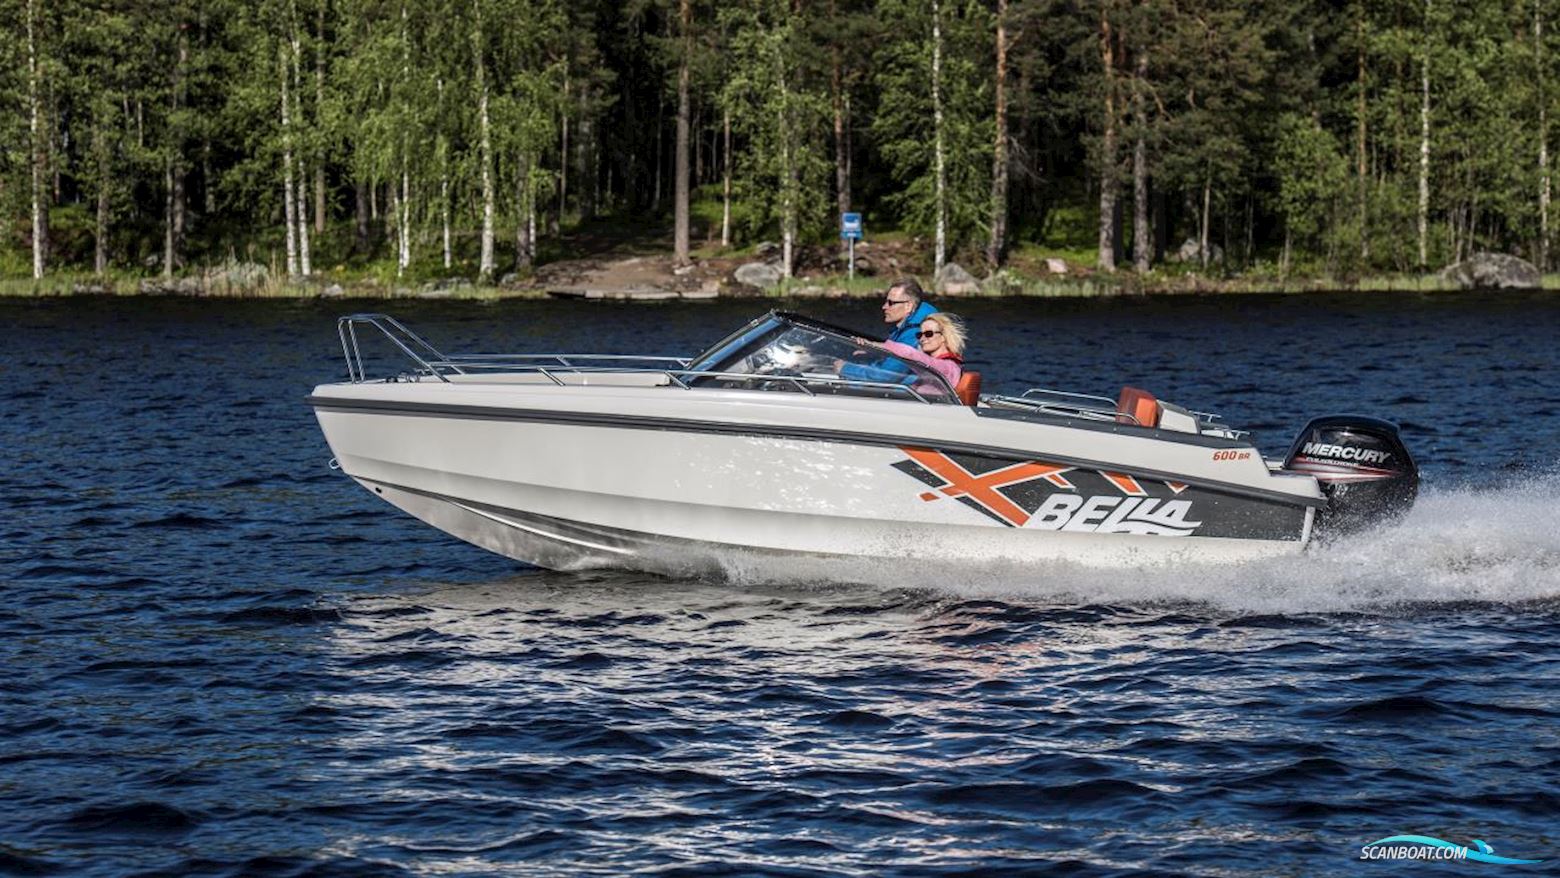 BELLA 600 BR Motorboot 2016, mit Mercury motor, Sweden